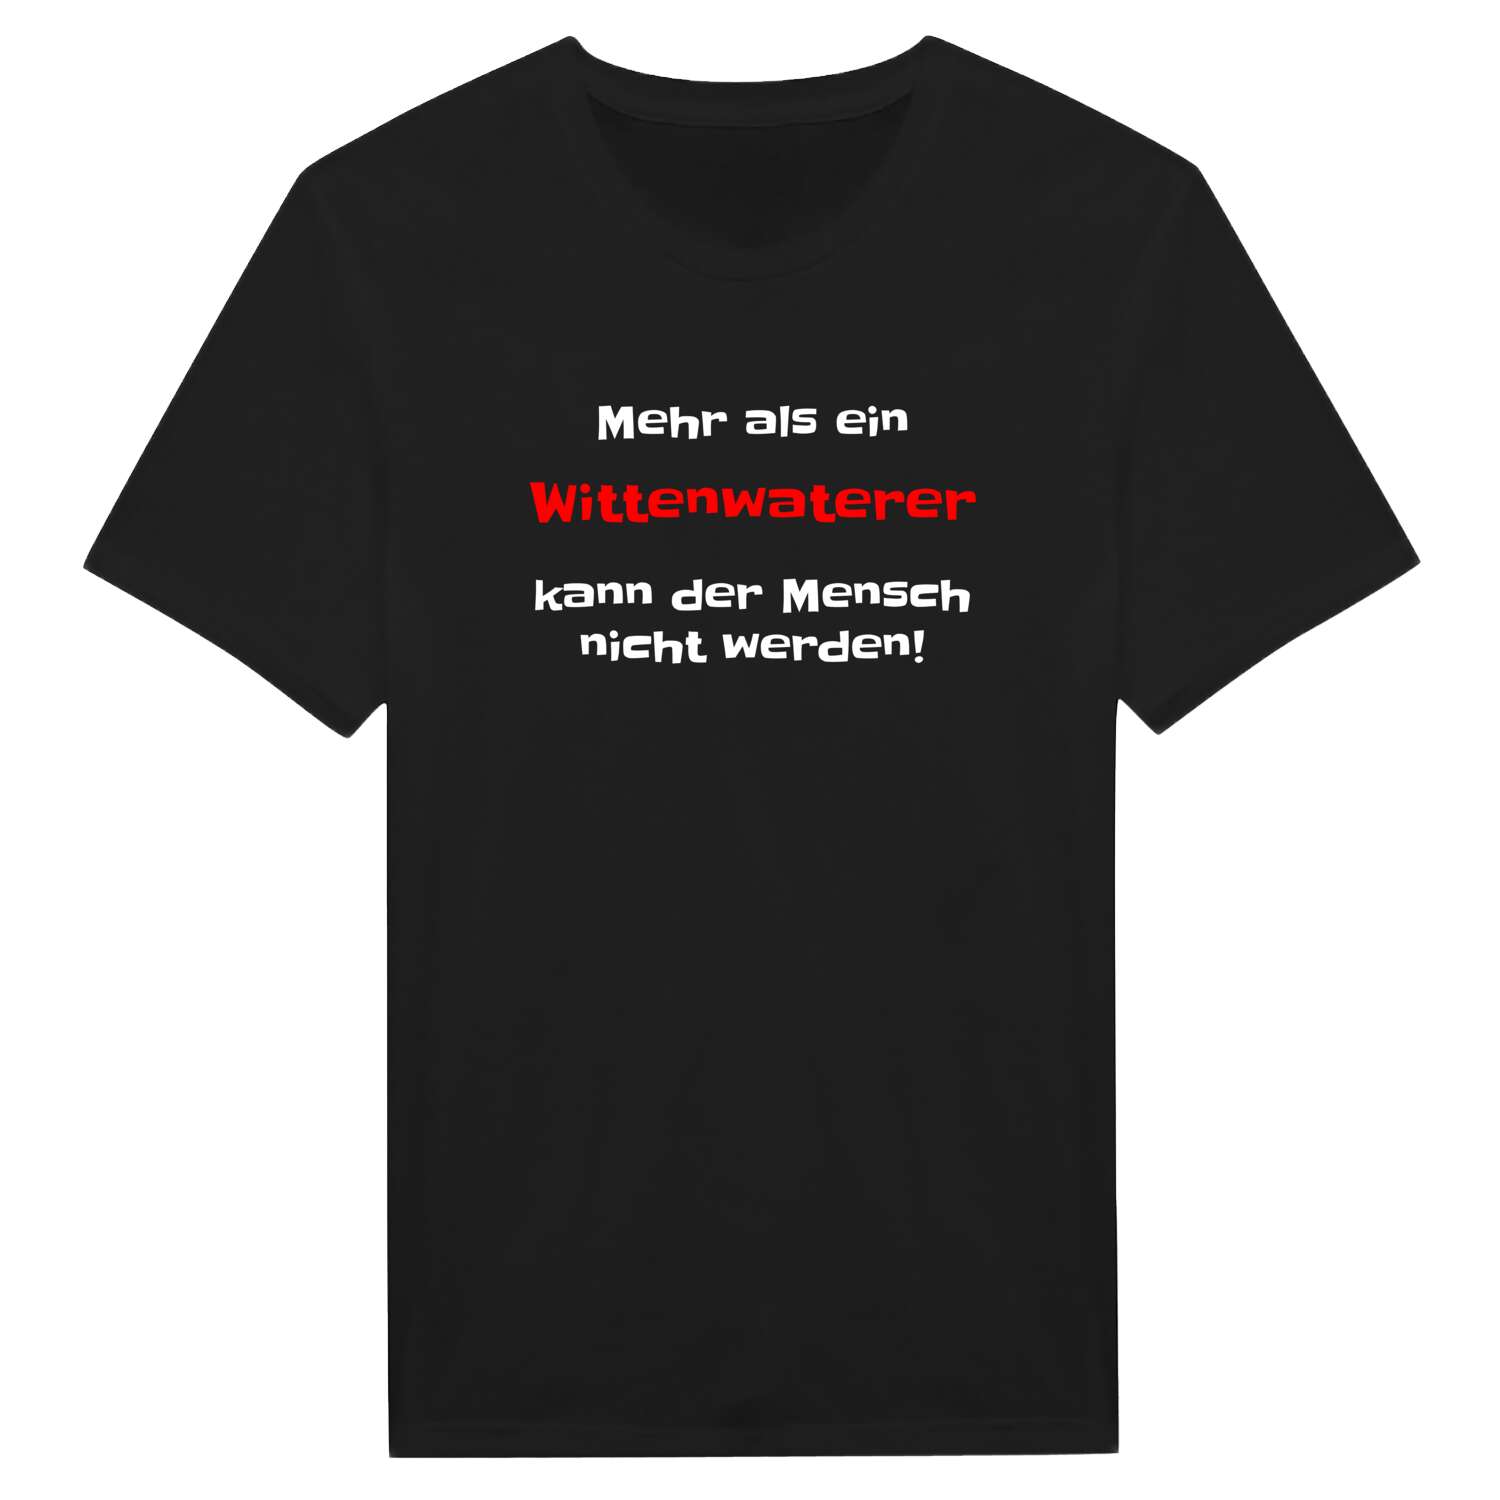 Wittenwater T-Shirt »Mehr als ein«